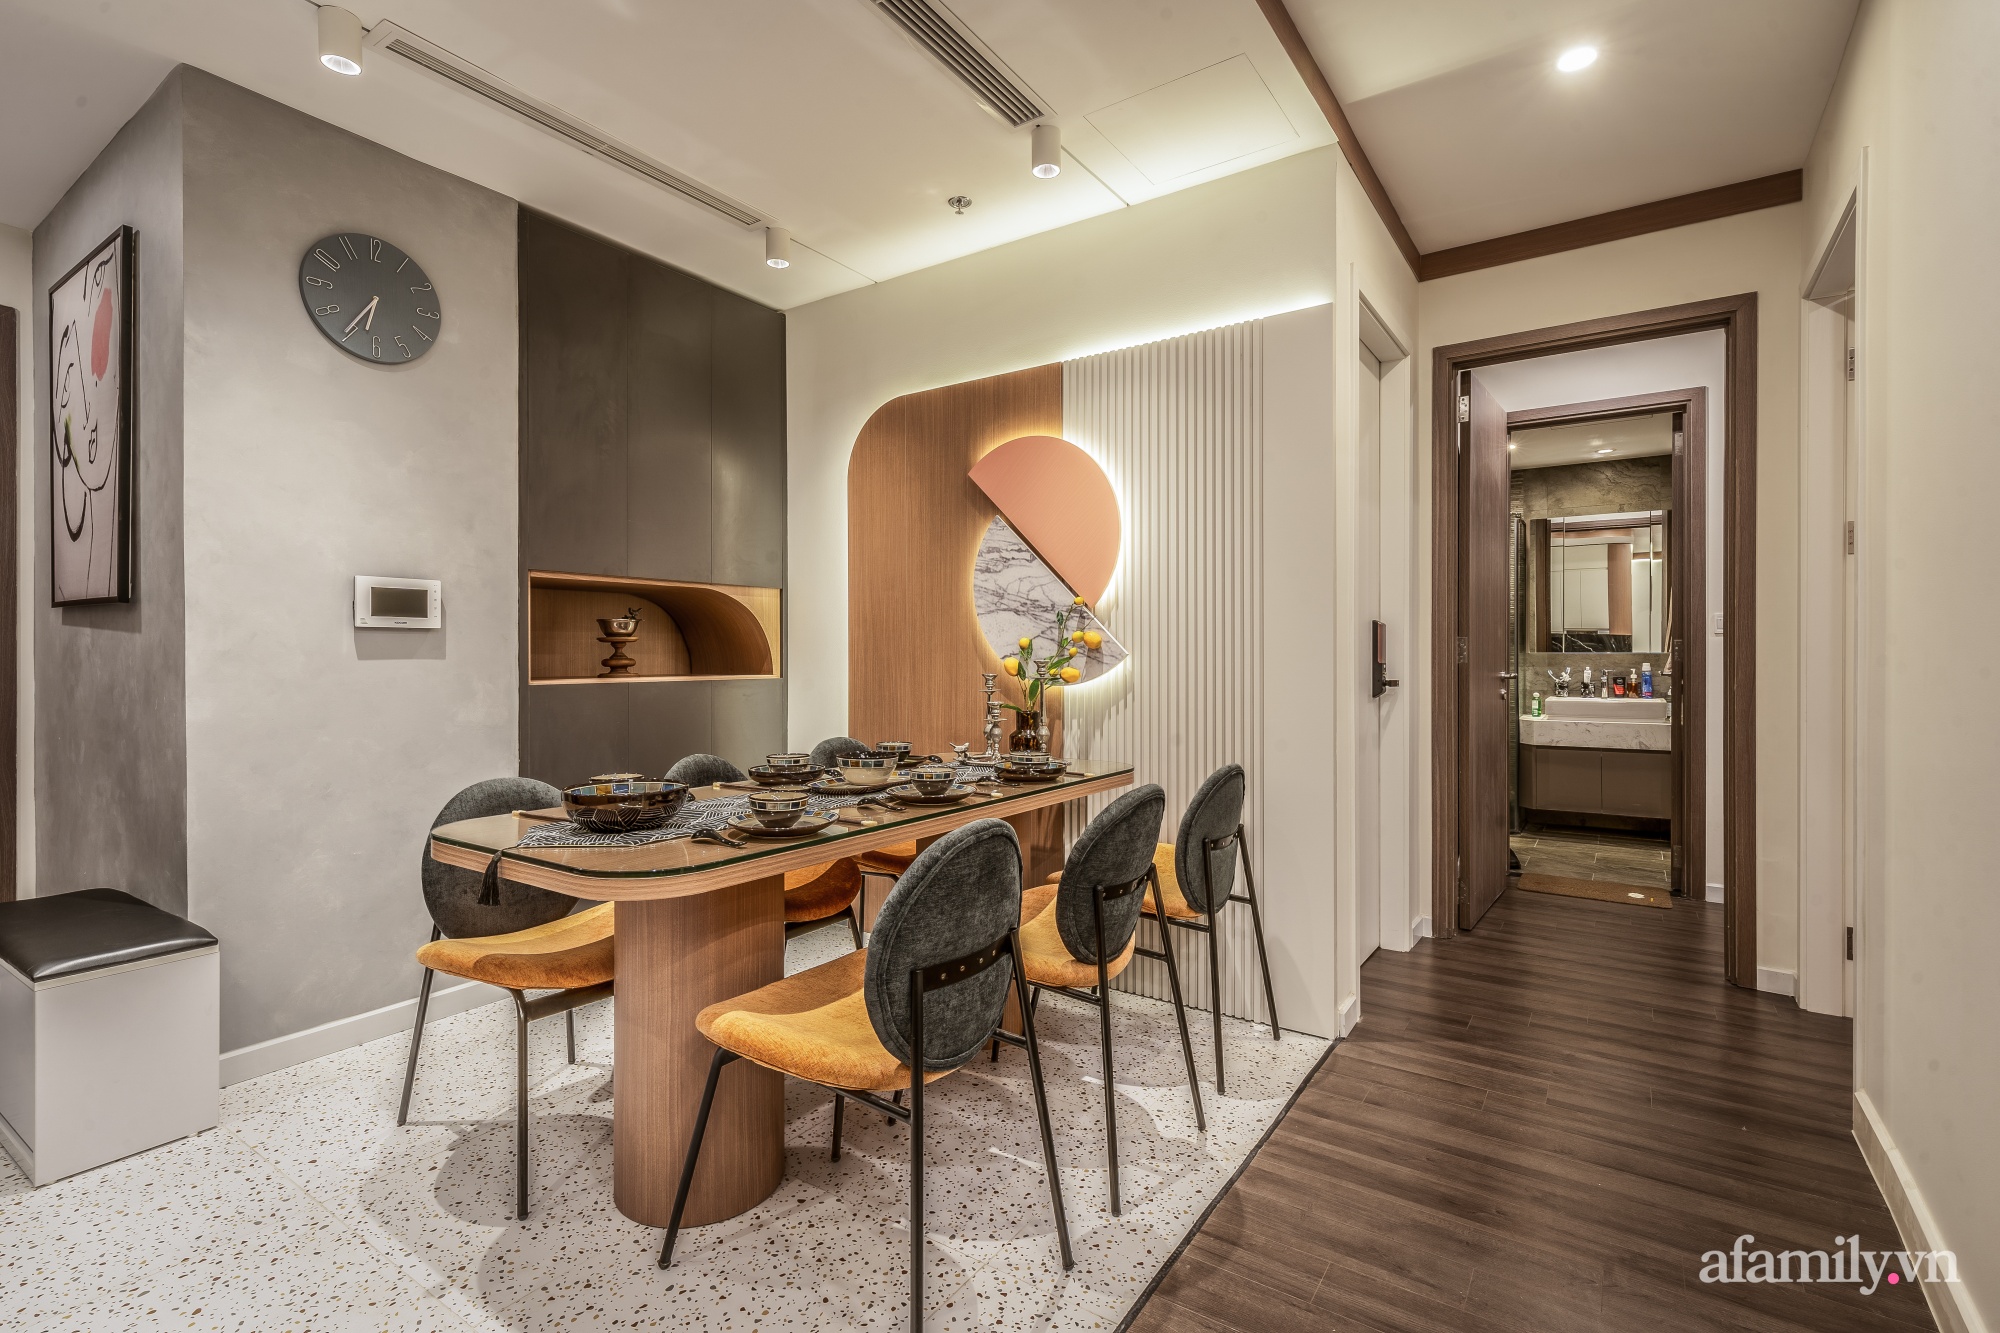 Đập thông 2 căn hộ cải tạo thành không gian sống ấn tượng với điểm nhấn màu gỗ kết hợp đường cong mềm mại ở Hà Nội - Ảnh 9.